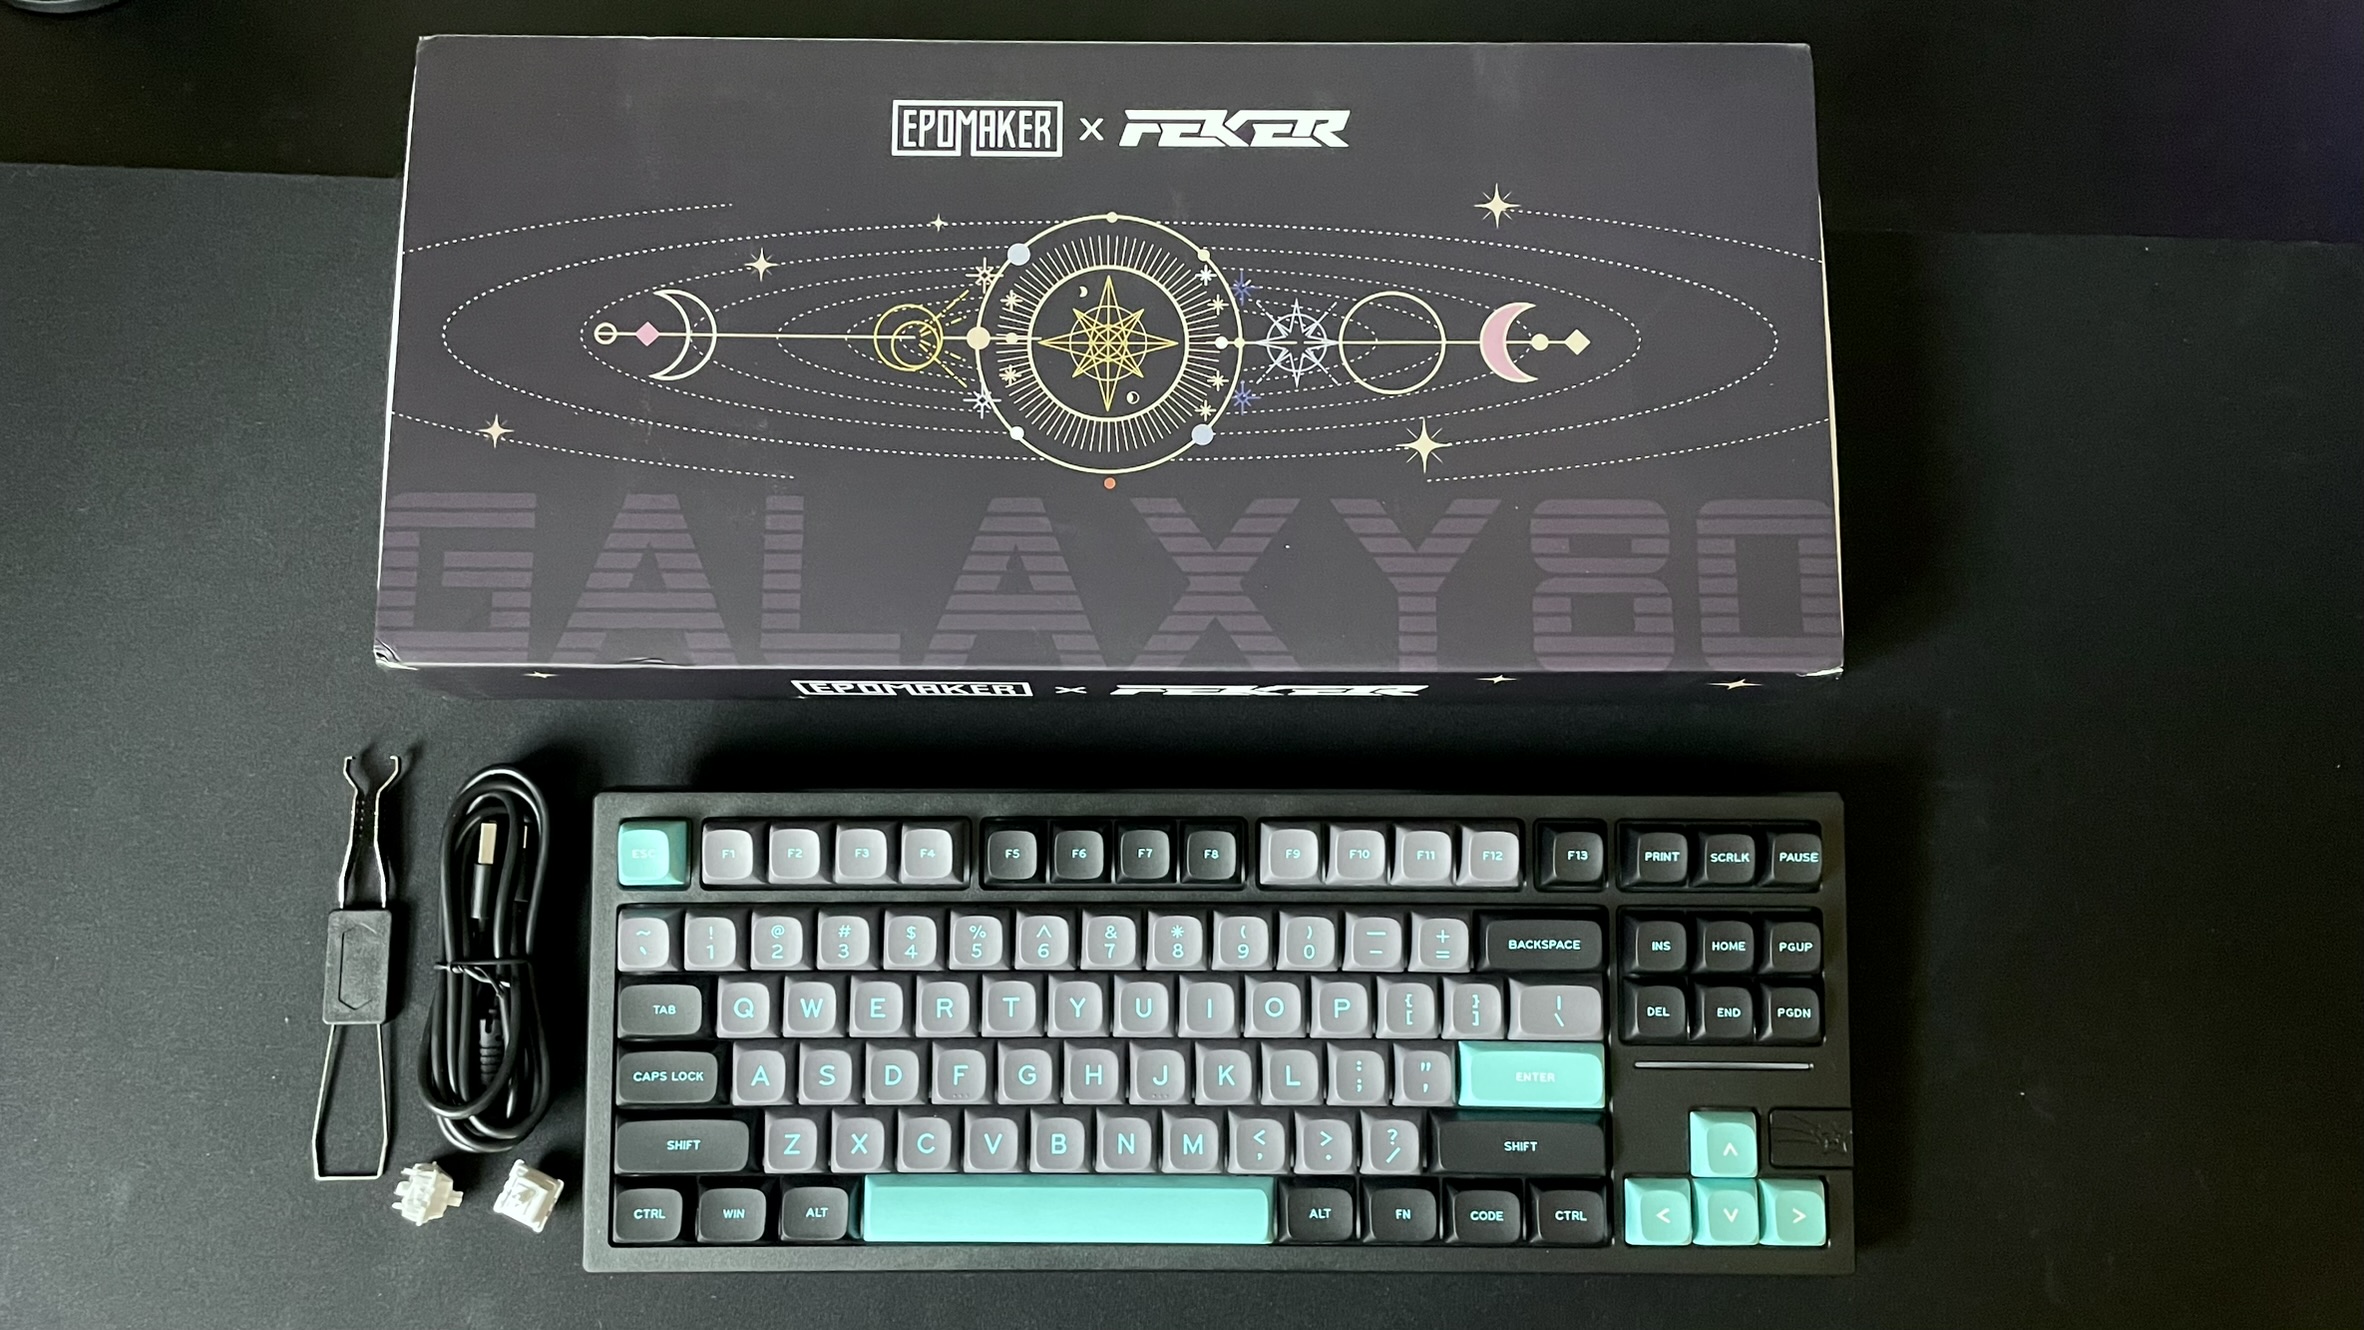 Обзор клавиатуры Epomaker x Feker Galaxy 80: она прочная, мягкая и поставляется в научно-фантастическом голубом цвете